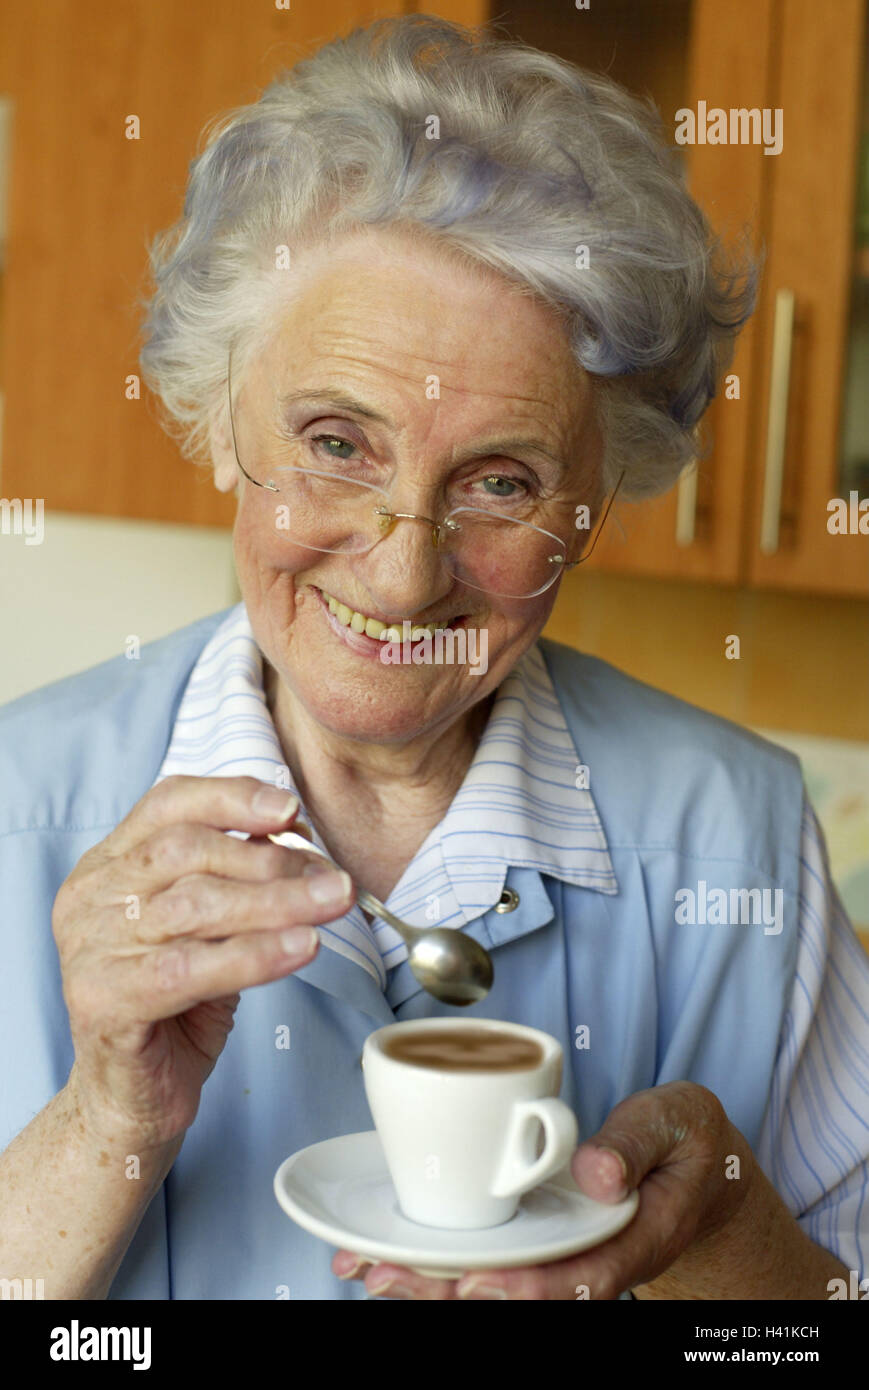 https://c8.alamy.com/comp/H41KCH/senior-glasses-espresso-drink-smile-half-portrait-60-70-years-woman-H41KCH.jpg